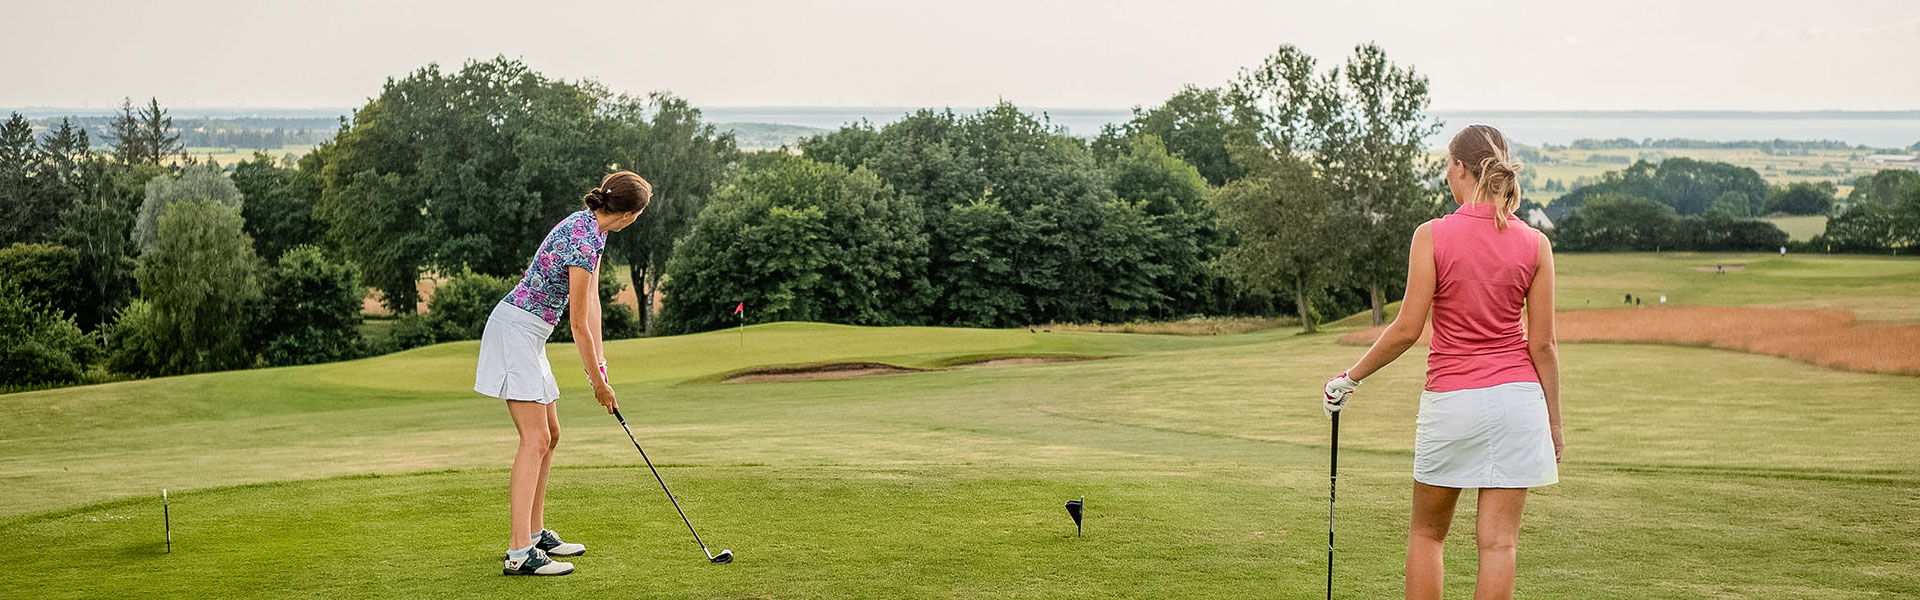 Golf på Åkagårdens golfbana